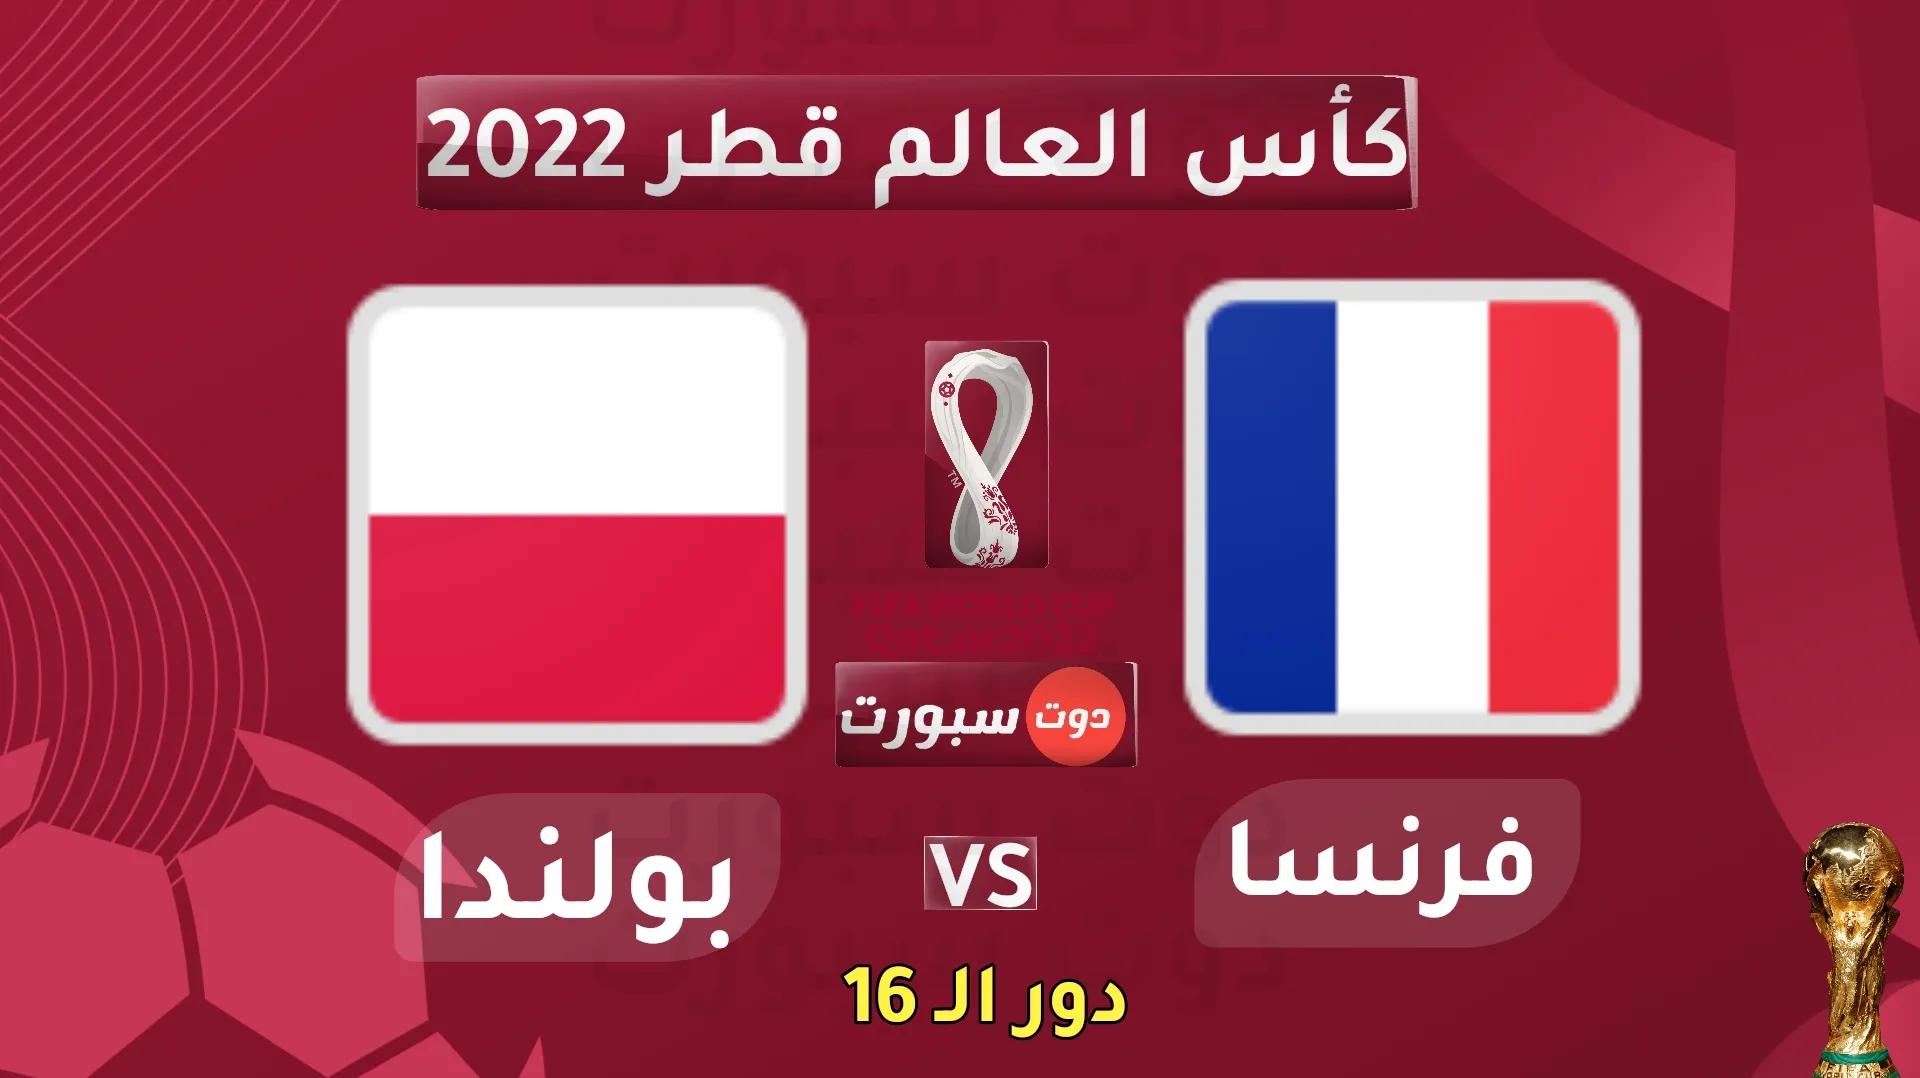 مباراة منتخـب فرنسا امام نظيره منتخـب بولندا